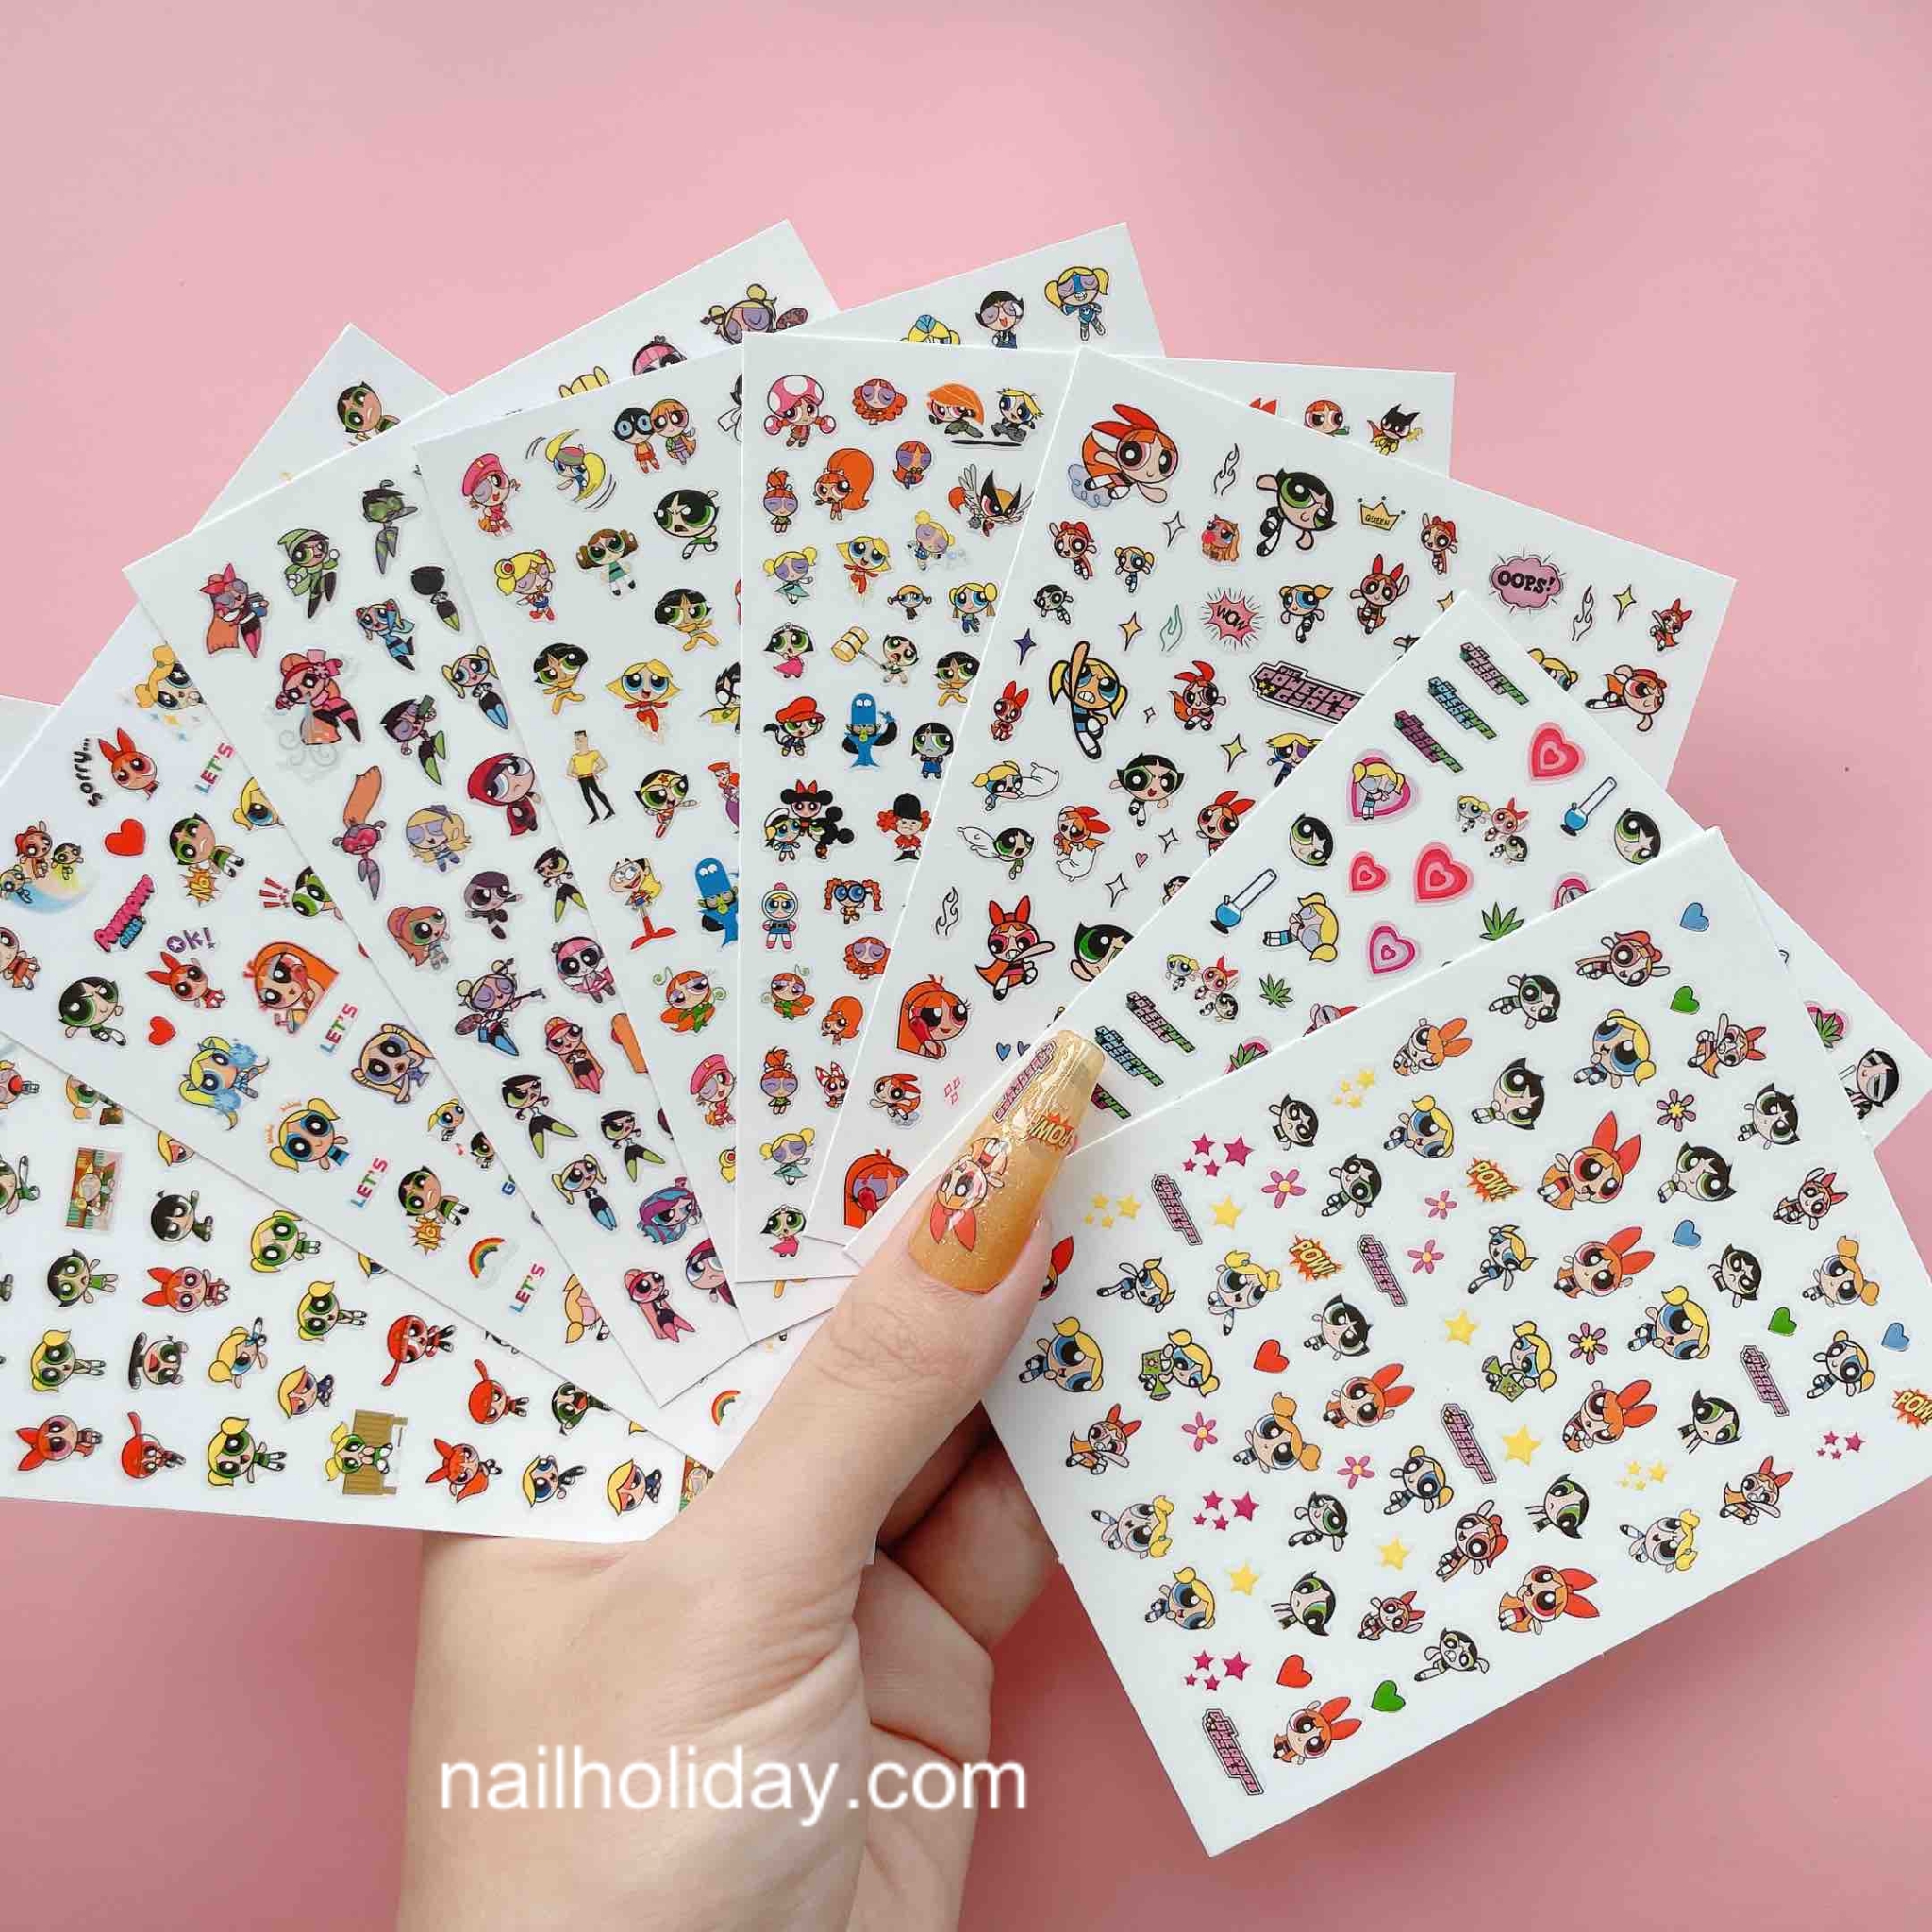 The Powerpuff Girls nail sticker